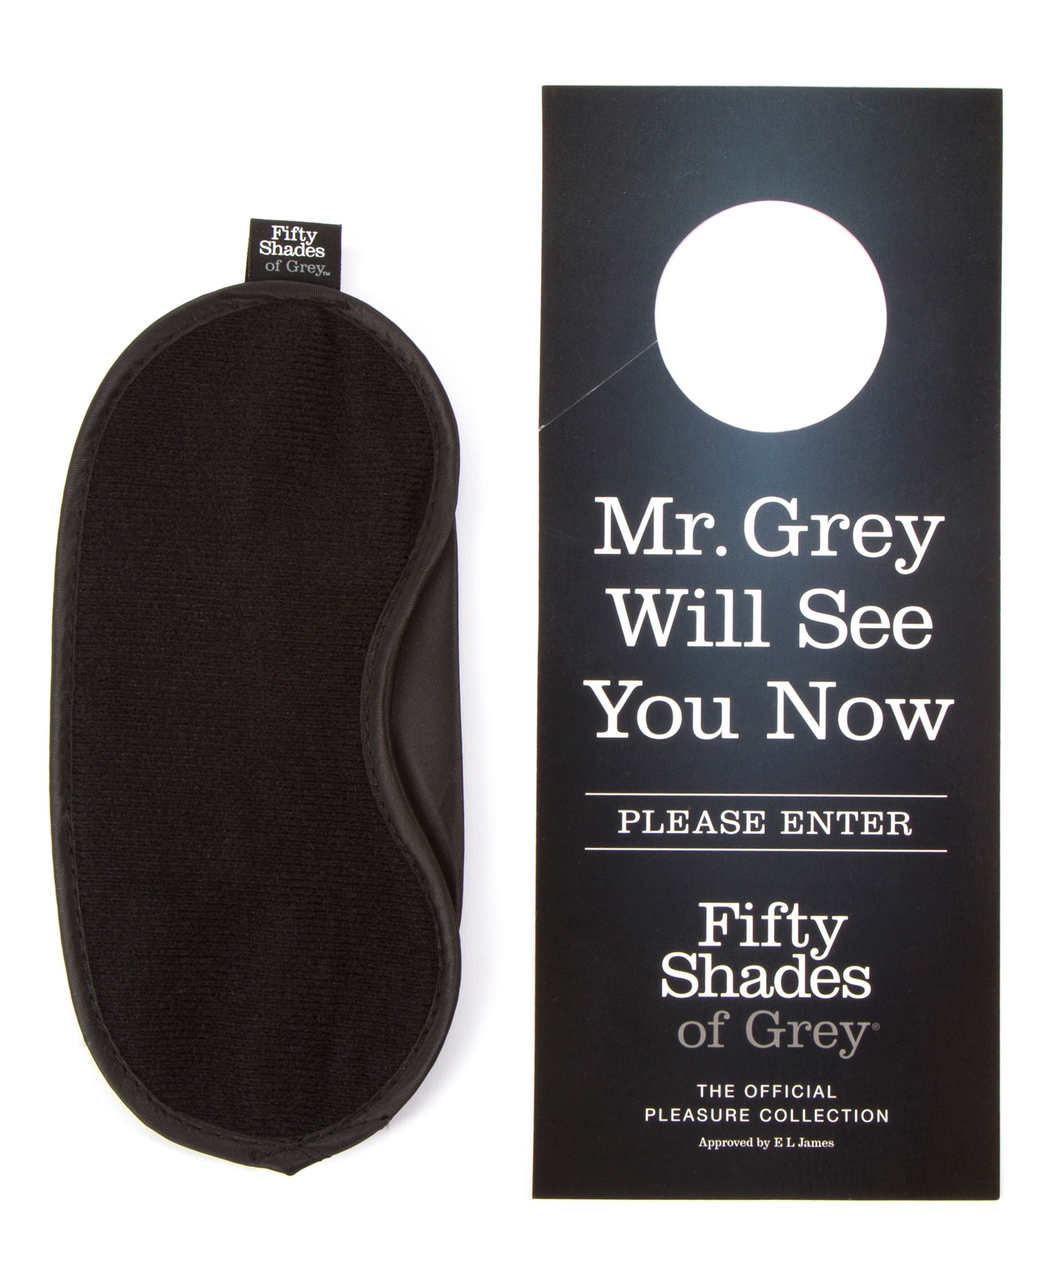 Fifty Shades of Grey kāju un roku saišu komplekts lietošanai gultā